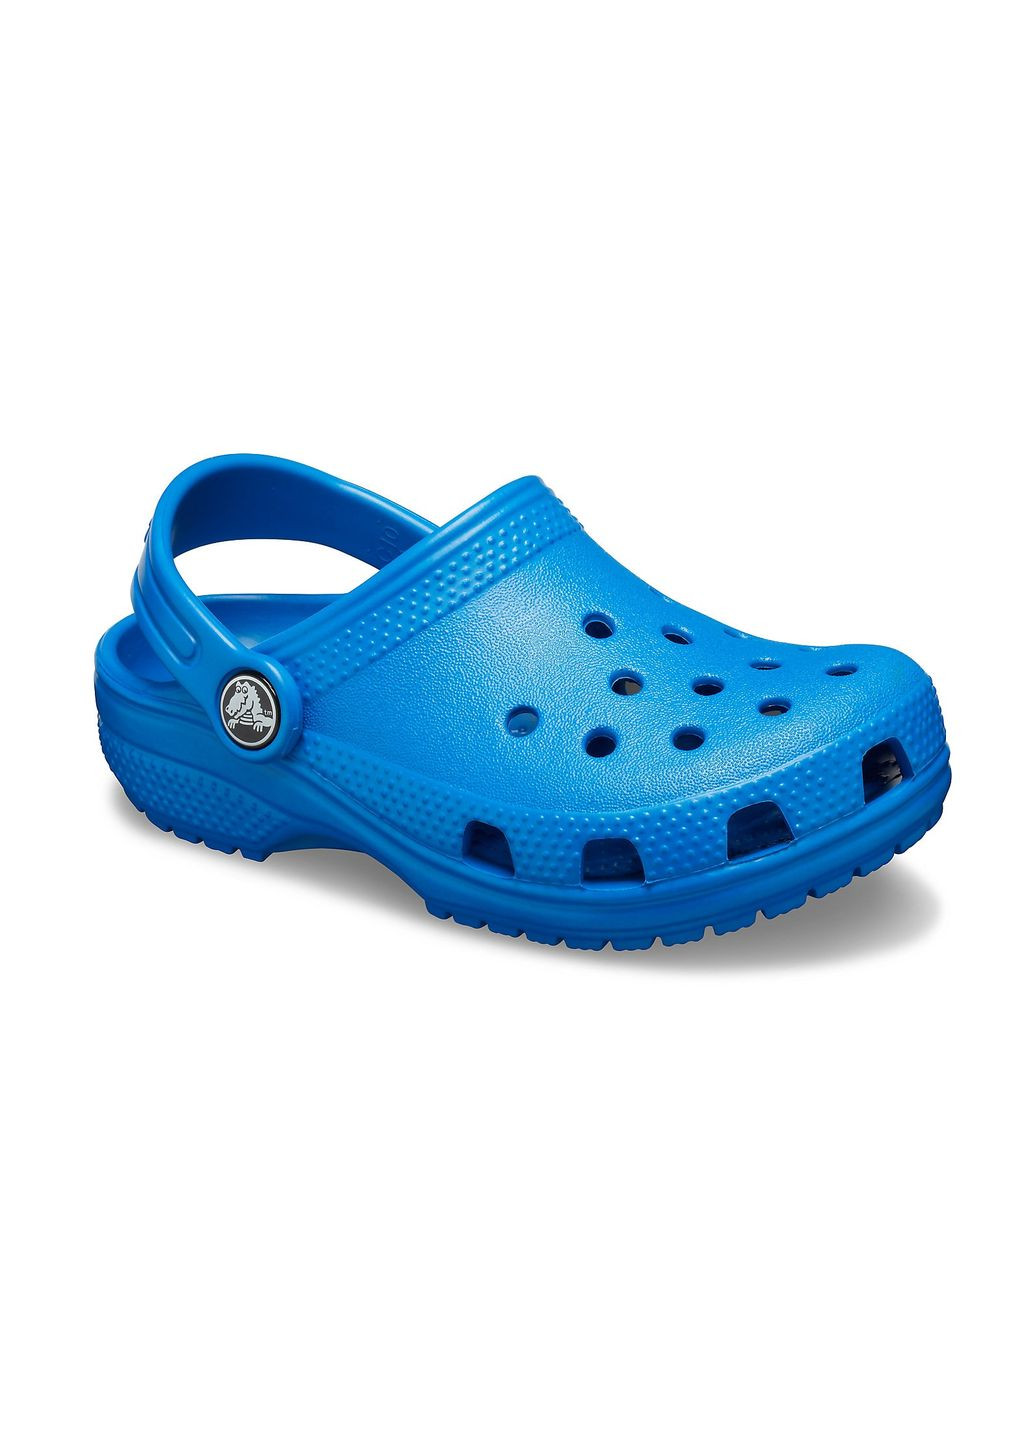 Синие сабо kids classic clog blue bolt j2\33\21.5 см 206991 Crocs